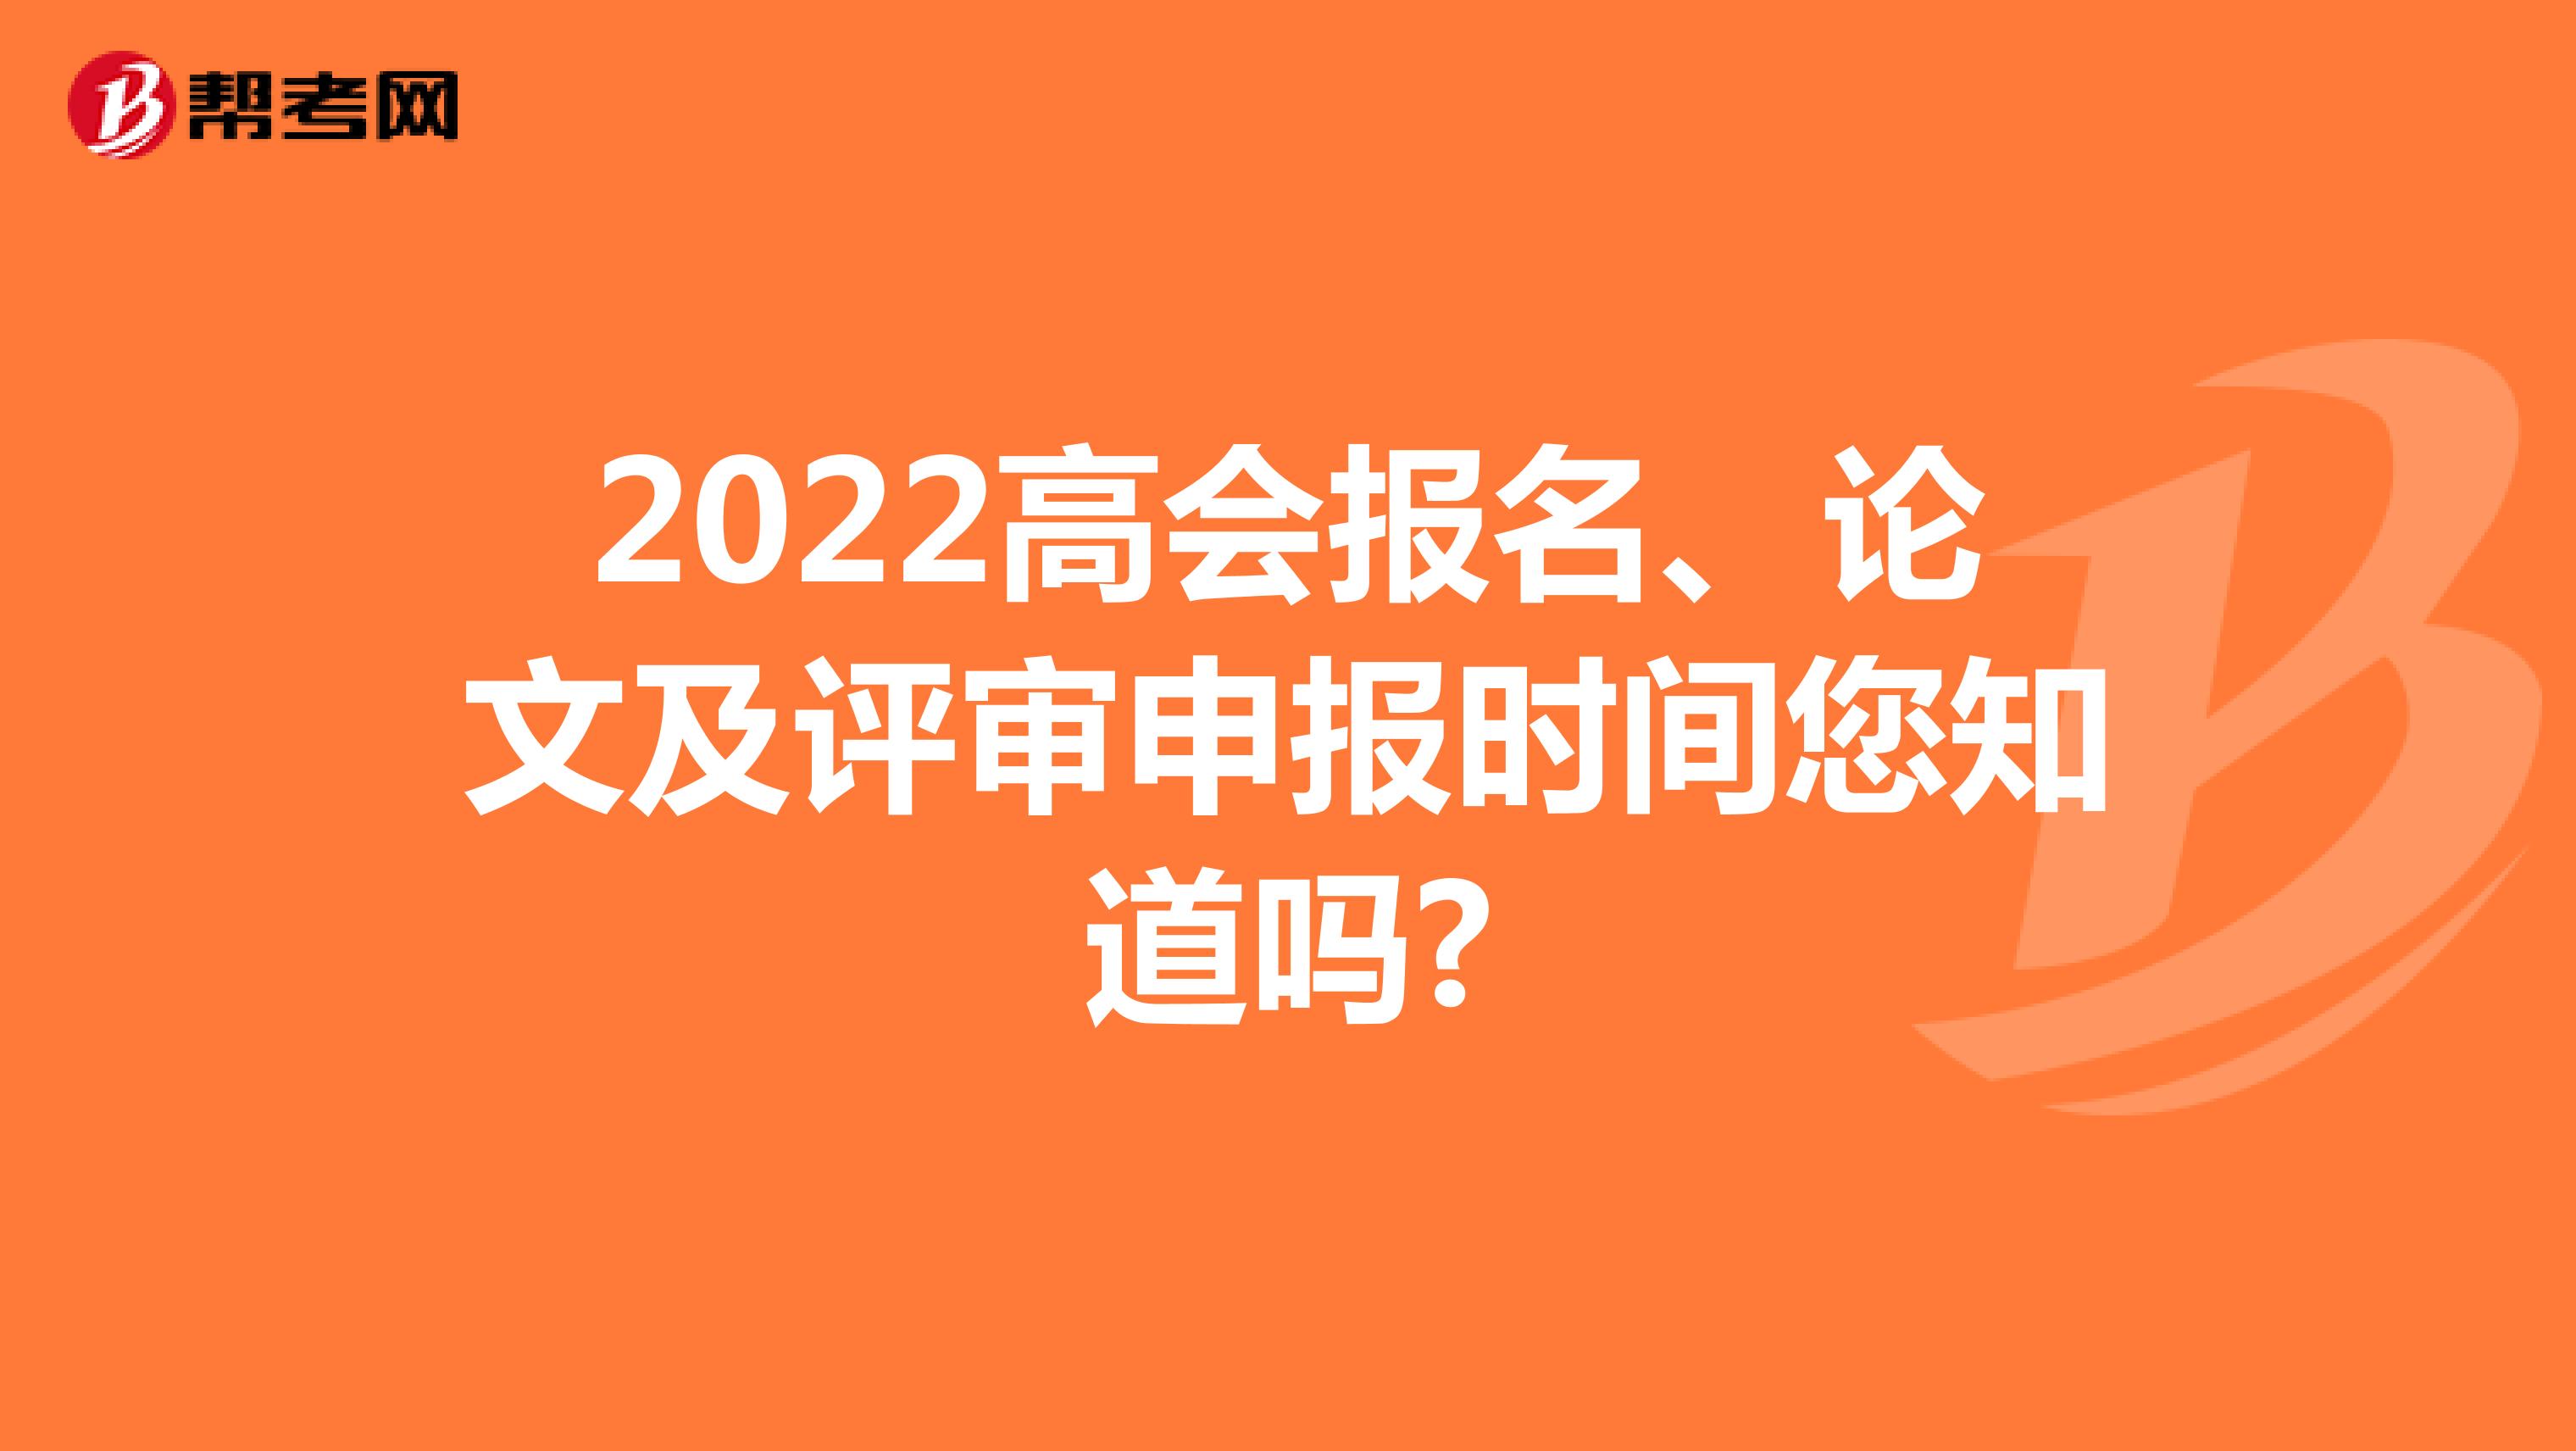 2022高会报名、论文及评审申报时间您知道吗?